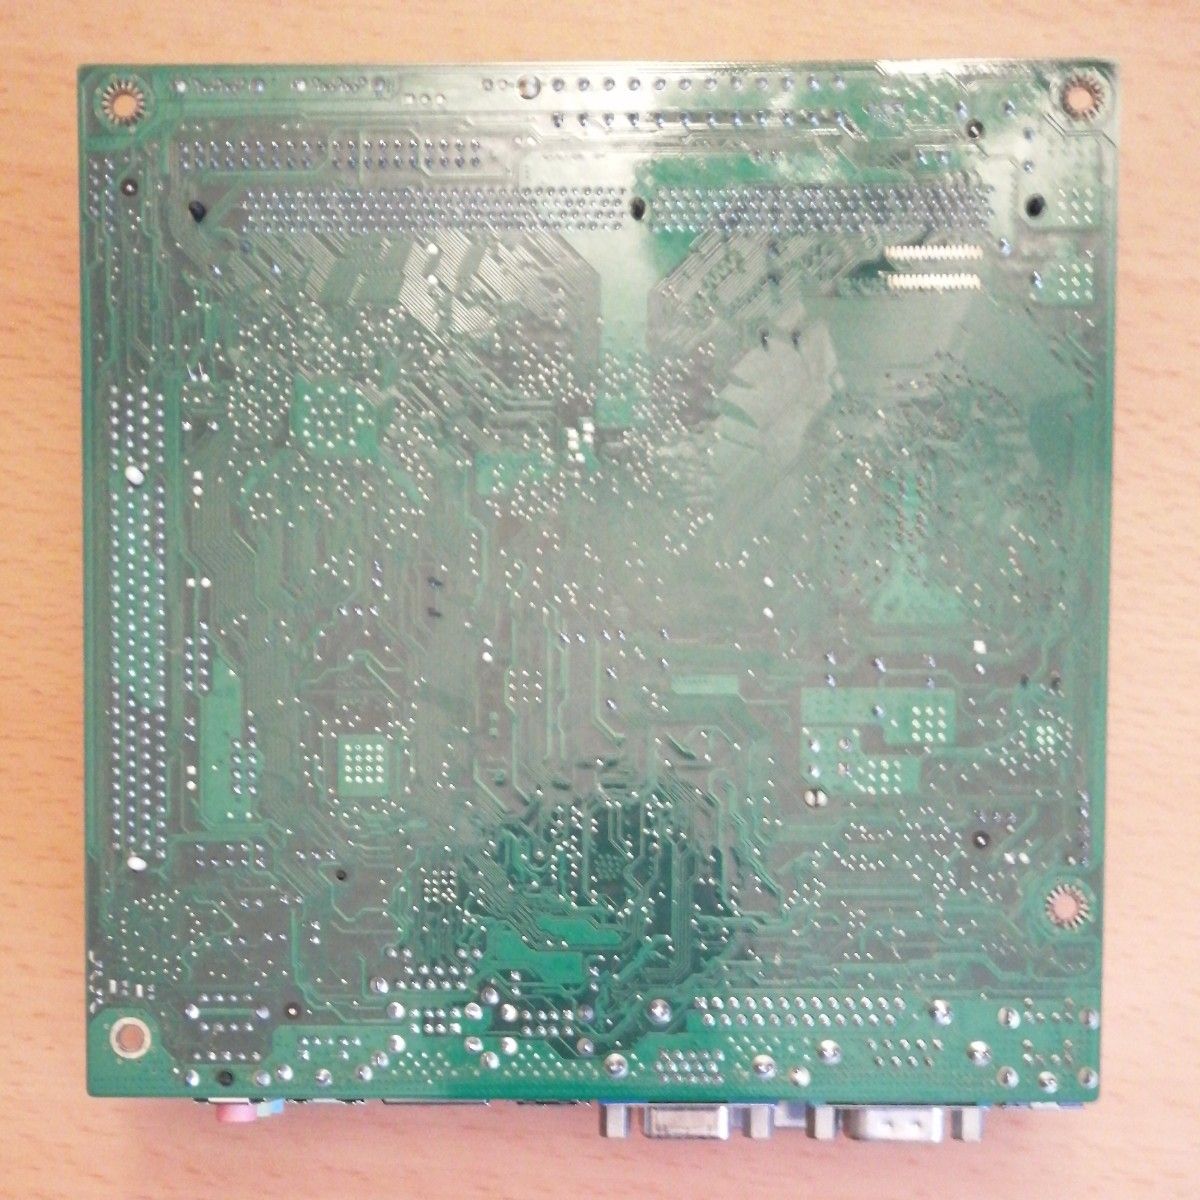 INTEL D945GCLF2 マザーボード (ATOM 330) + メモリ2GB